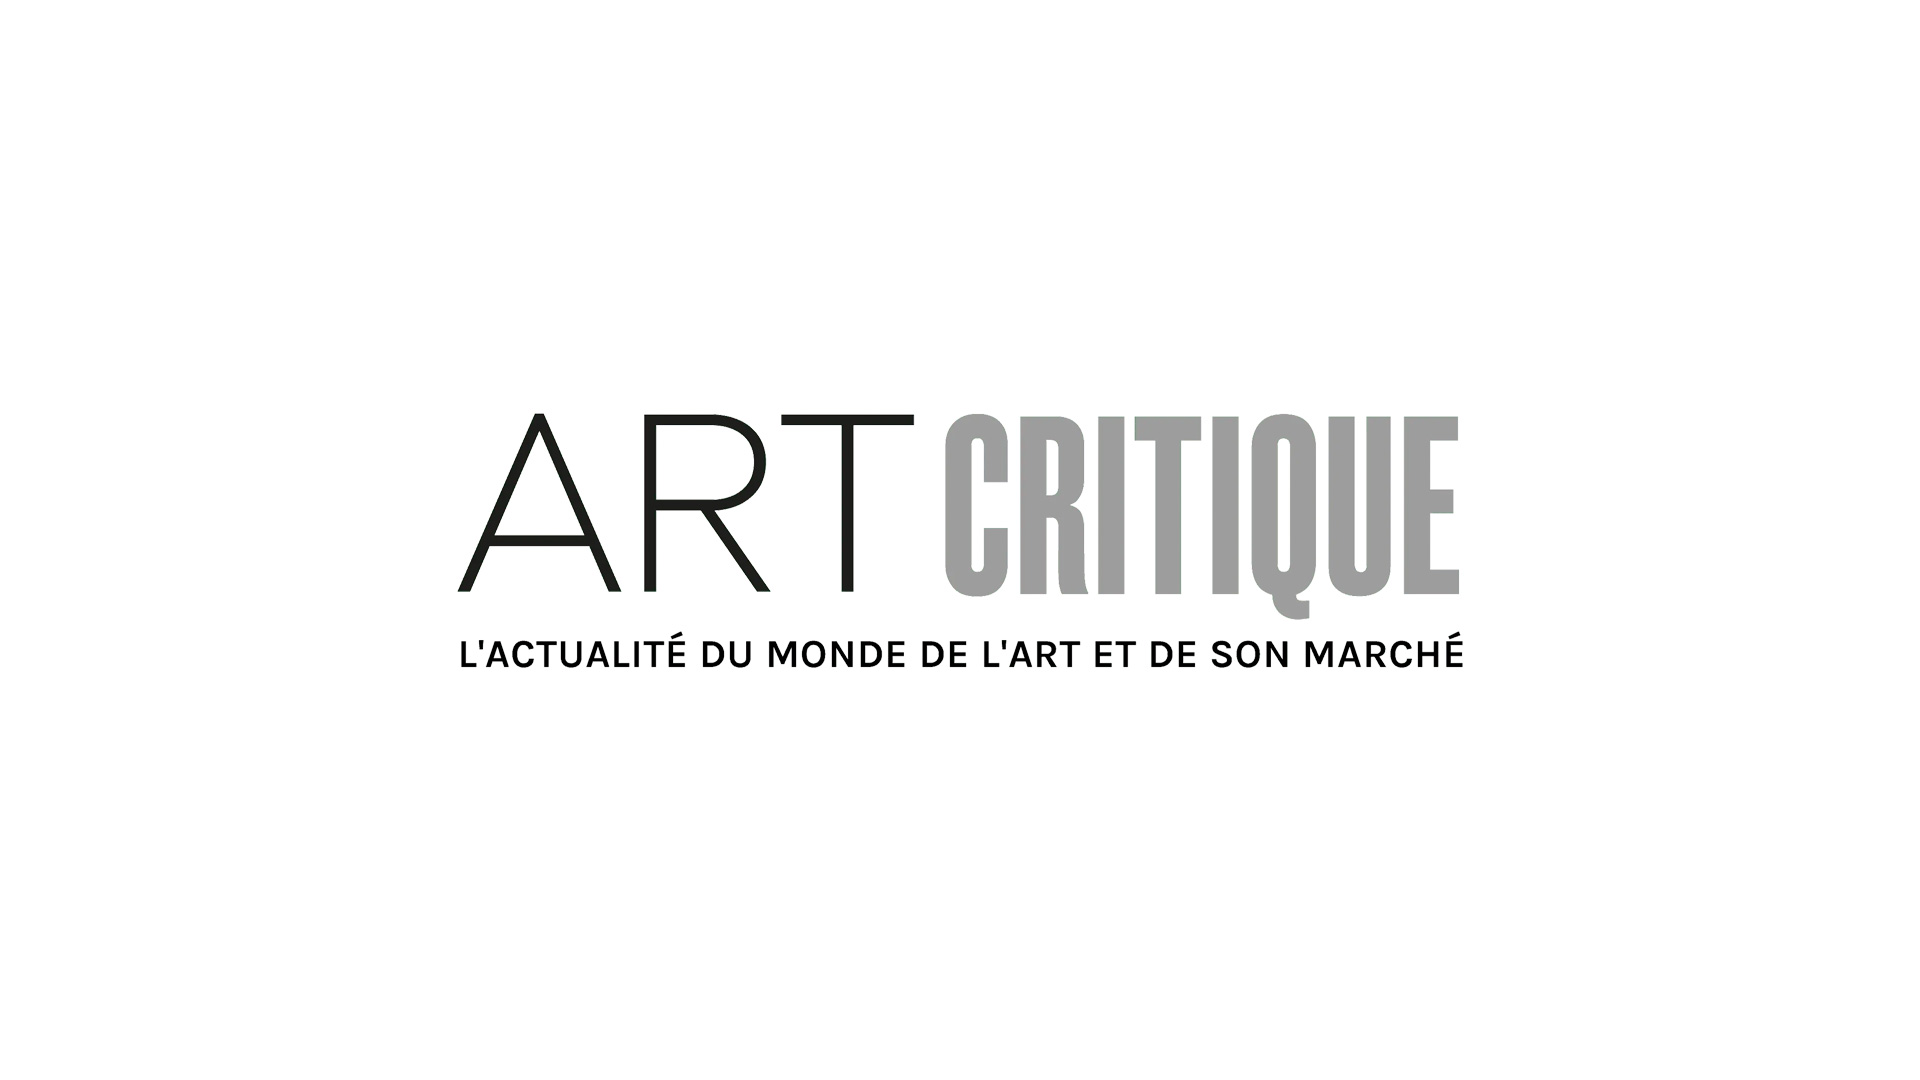 Le monde nouveau de Charlotte Perriand à la Fondation Louis Vuitton